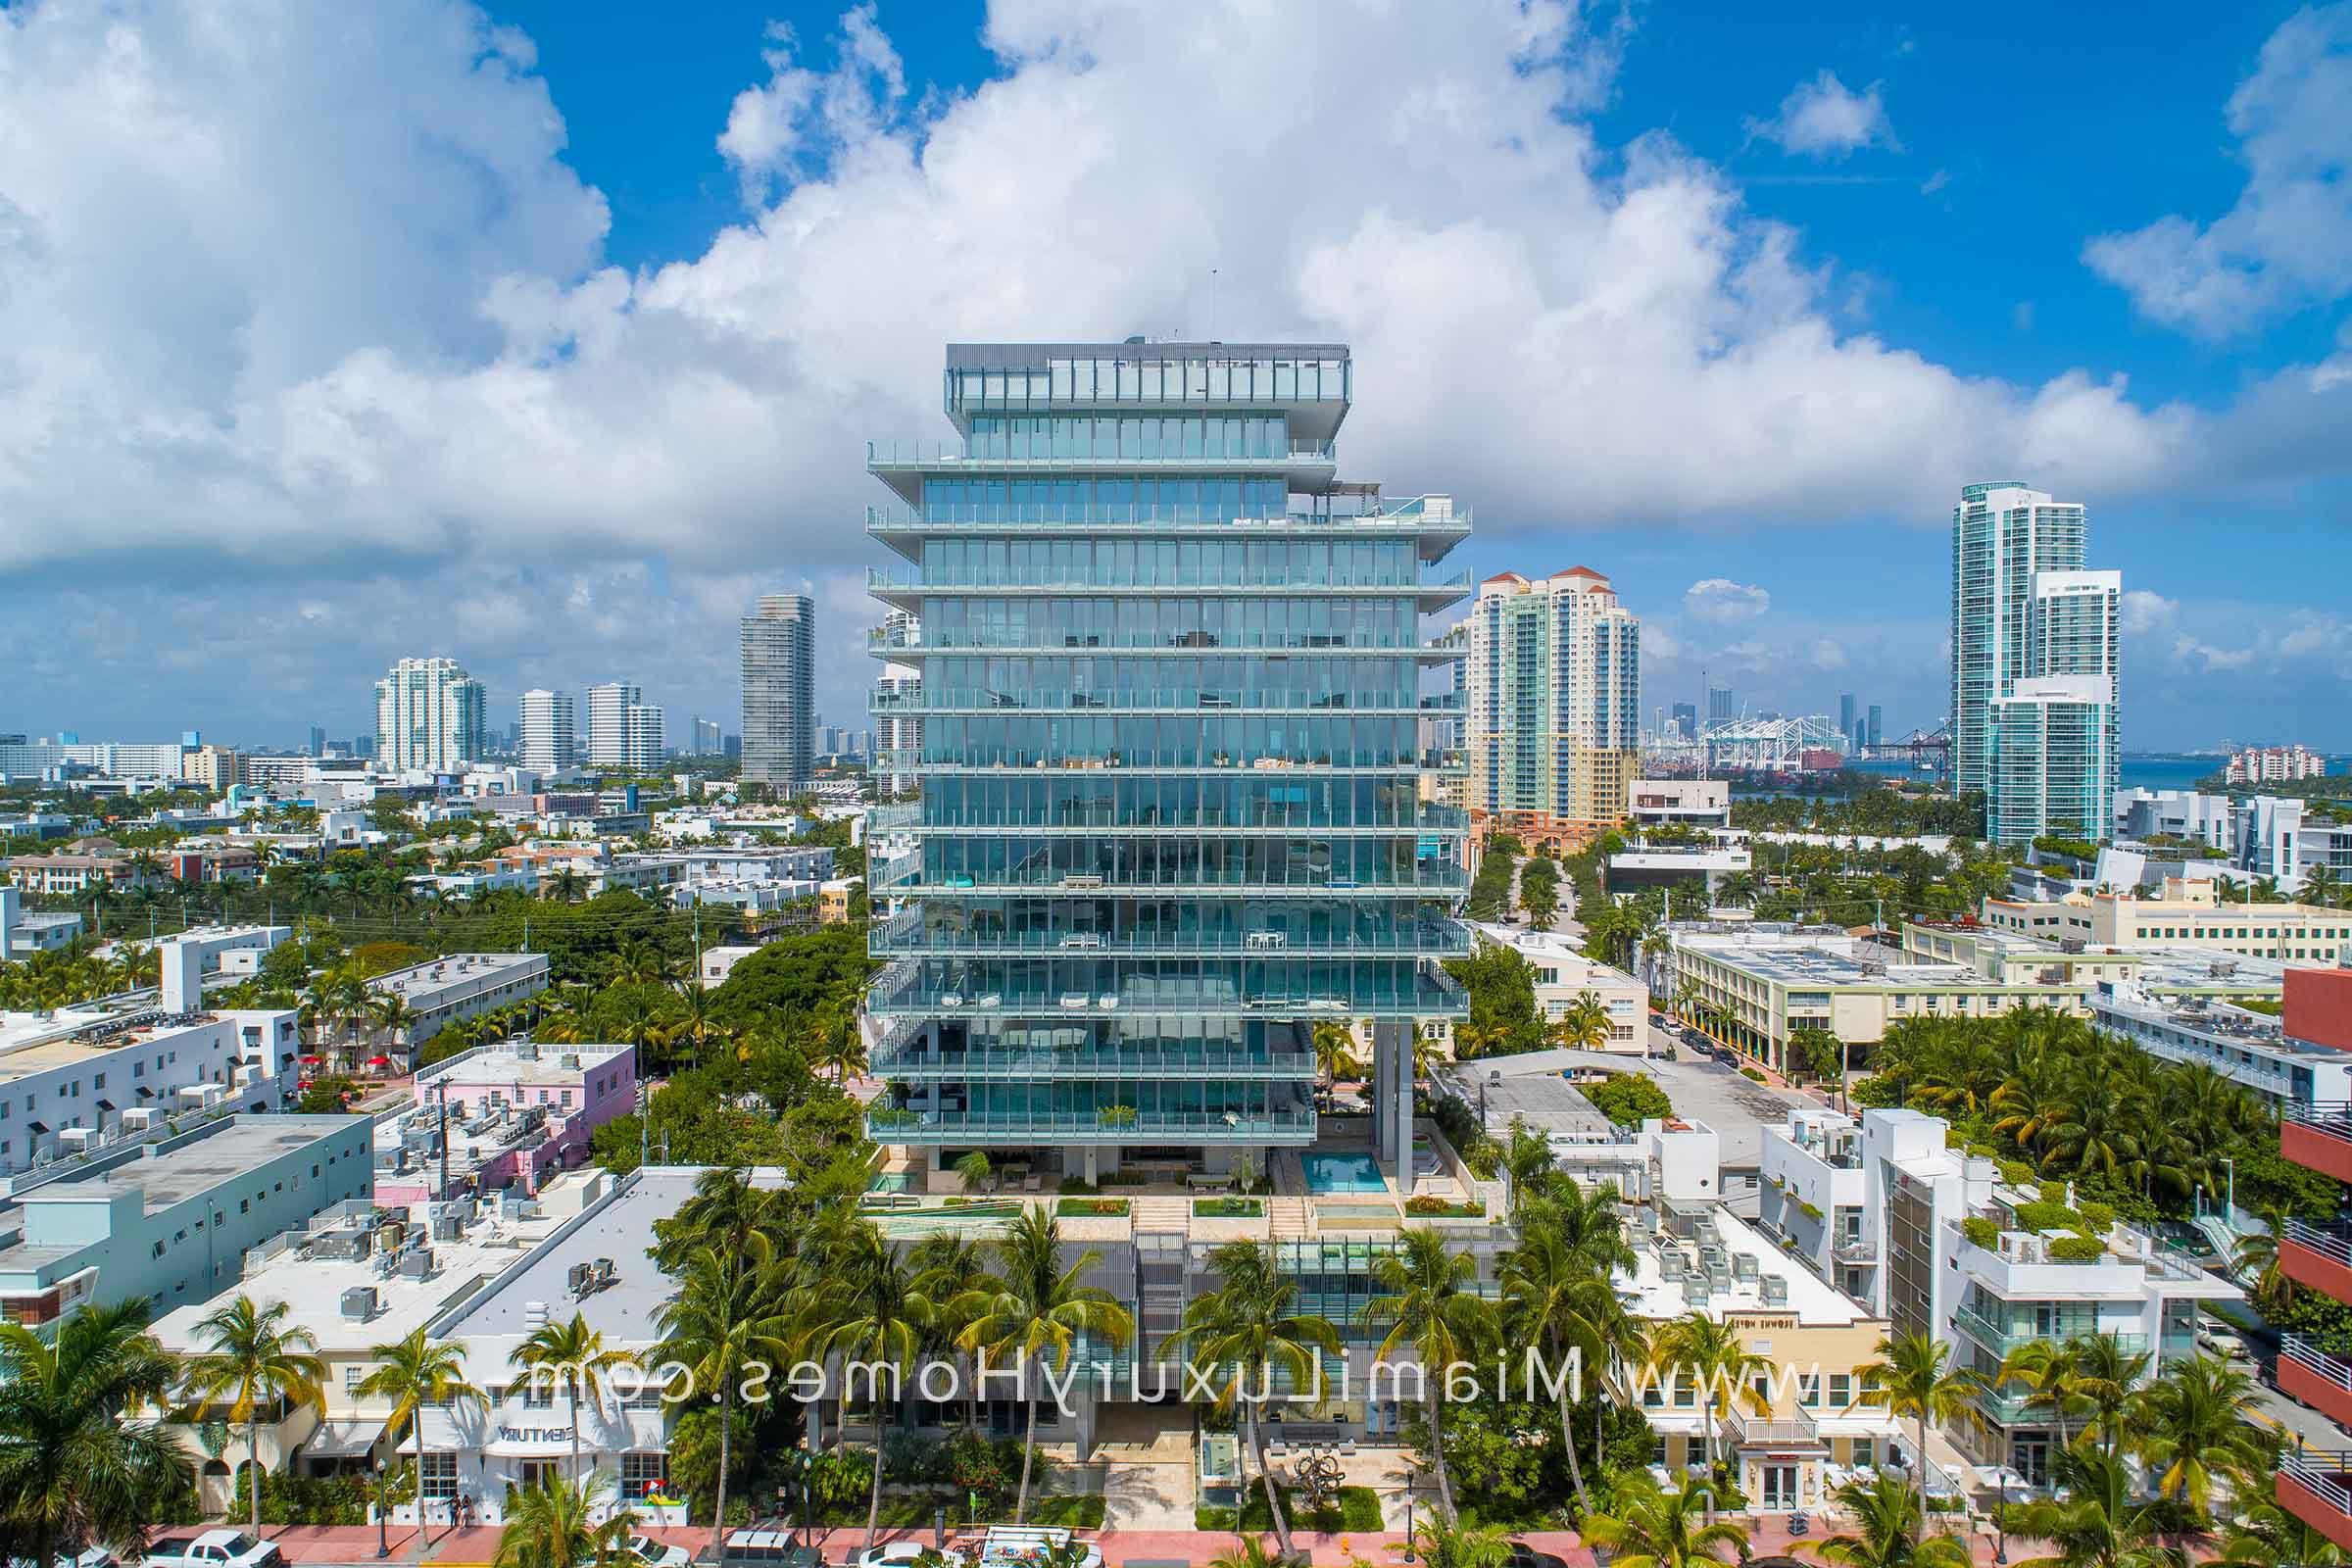 Glass Miami Beach Condo Building